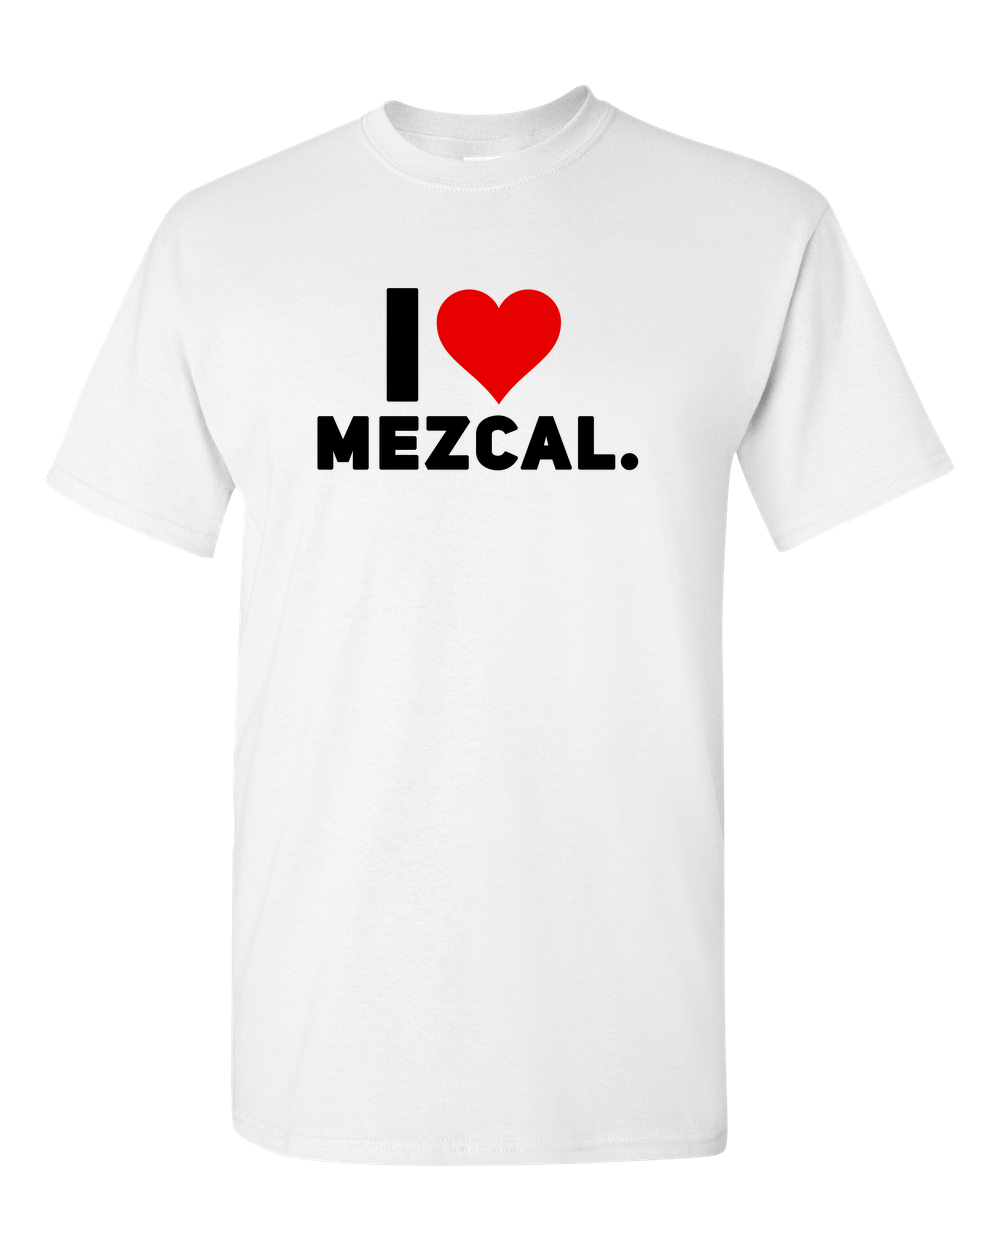 I Love Mezcal Adult Unisex Funny T-Shirt